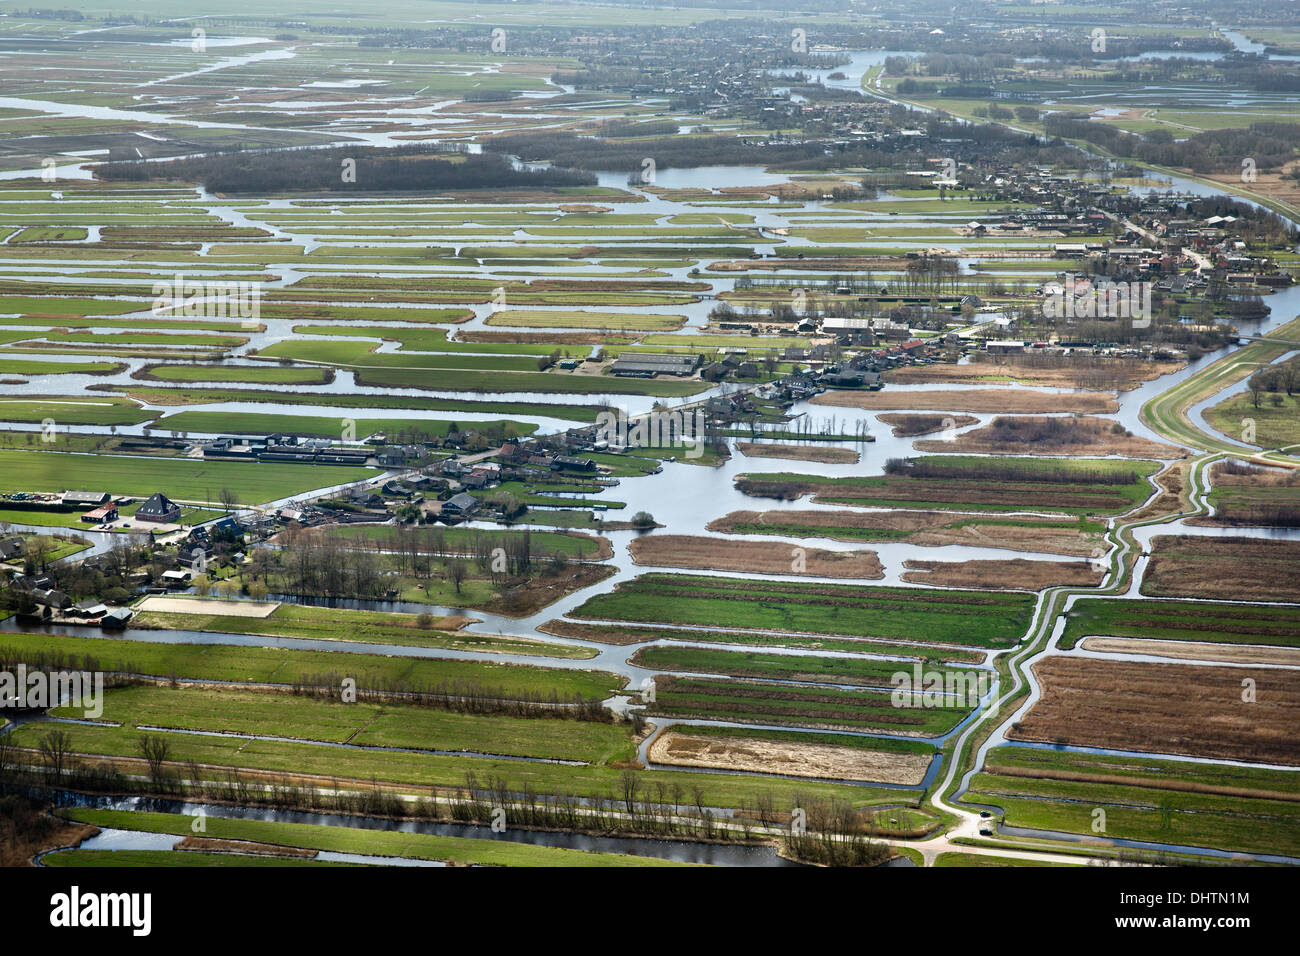 Niederlande, Den Ilp, Häuser und Bauernhöfe in Polderlandschaft. Luftbild Stockfoto